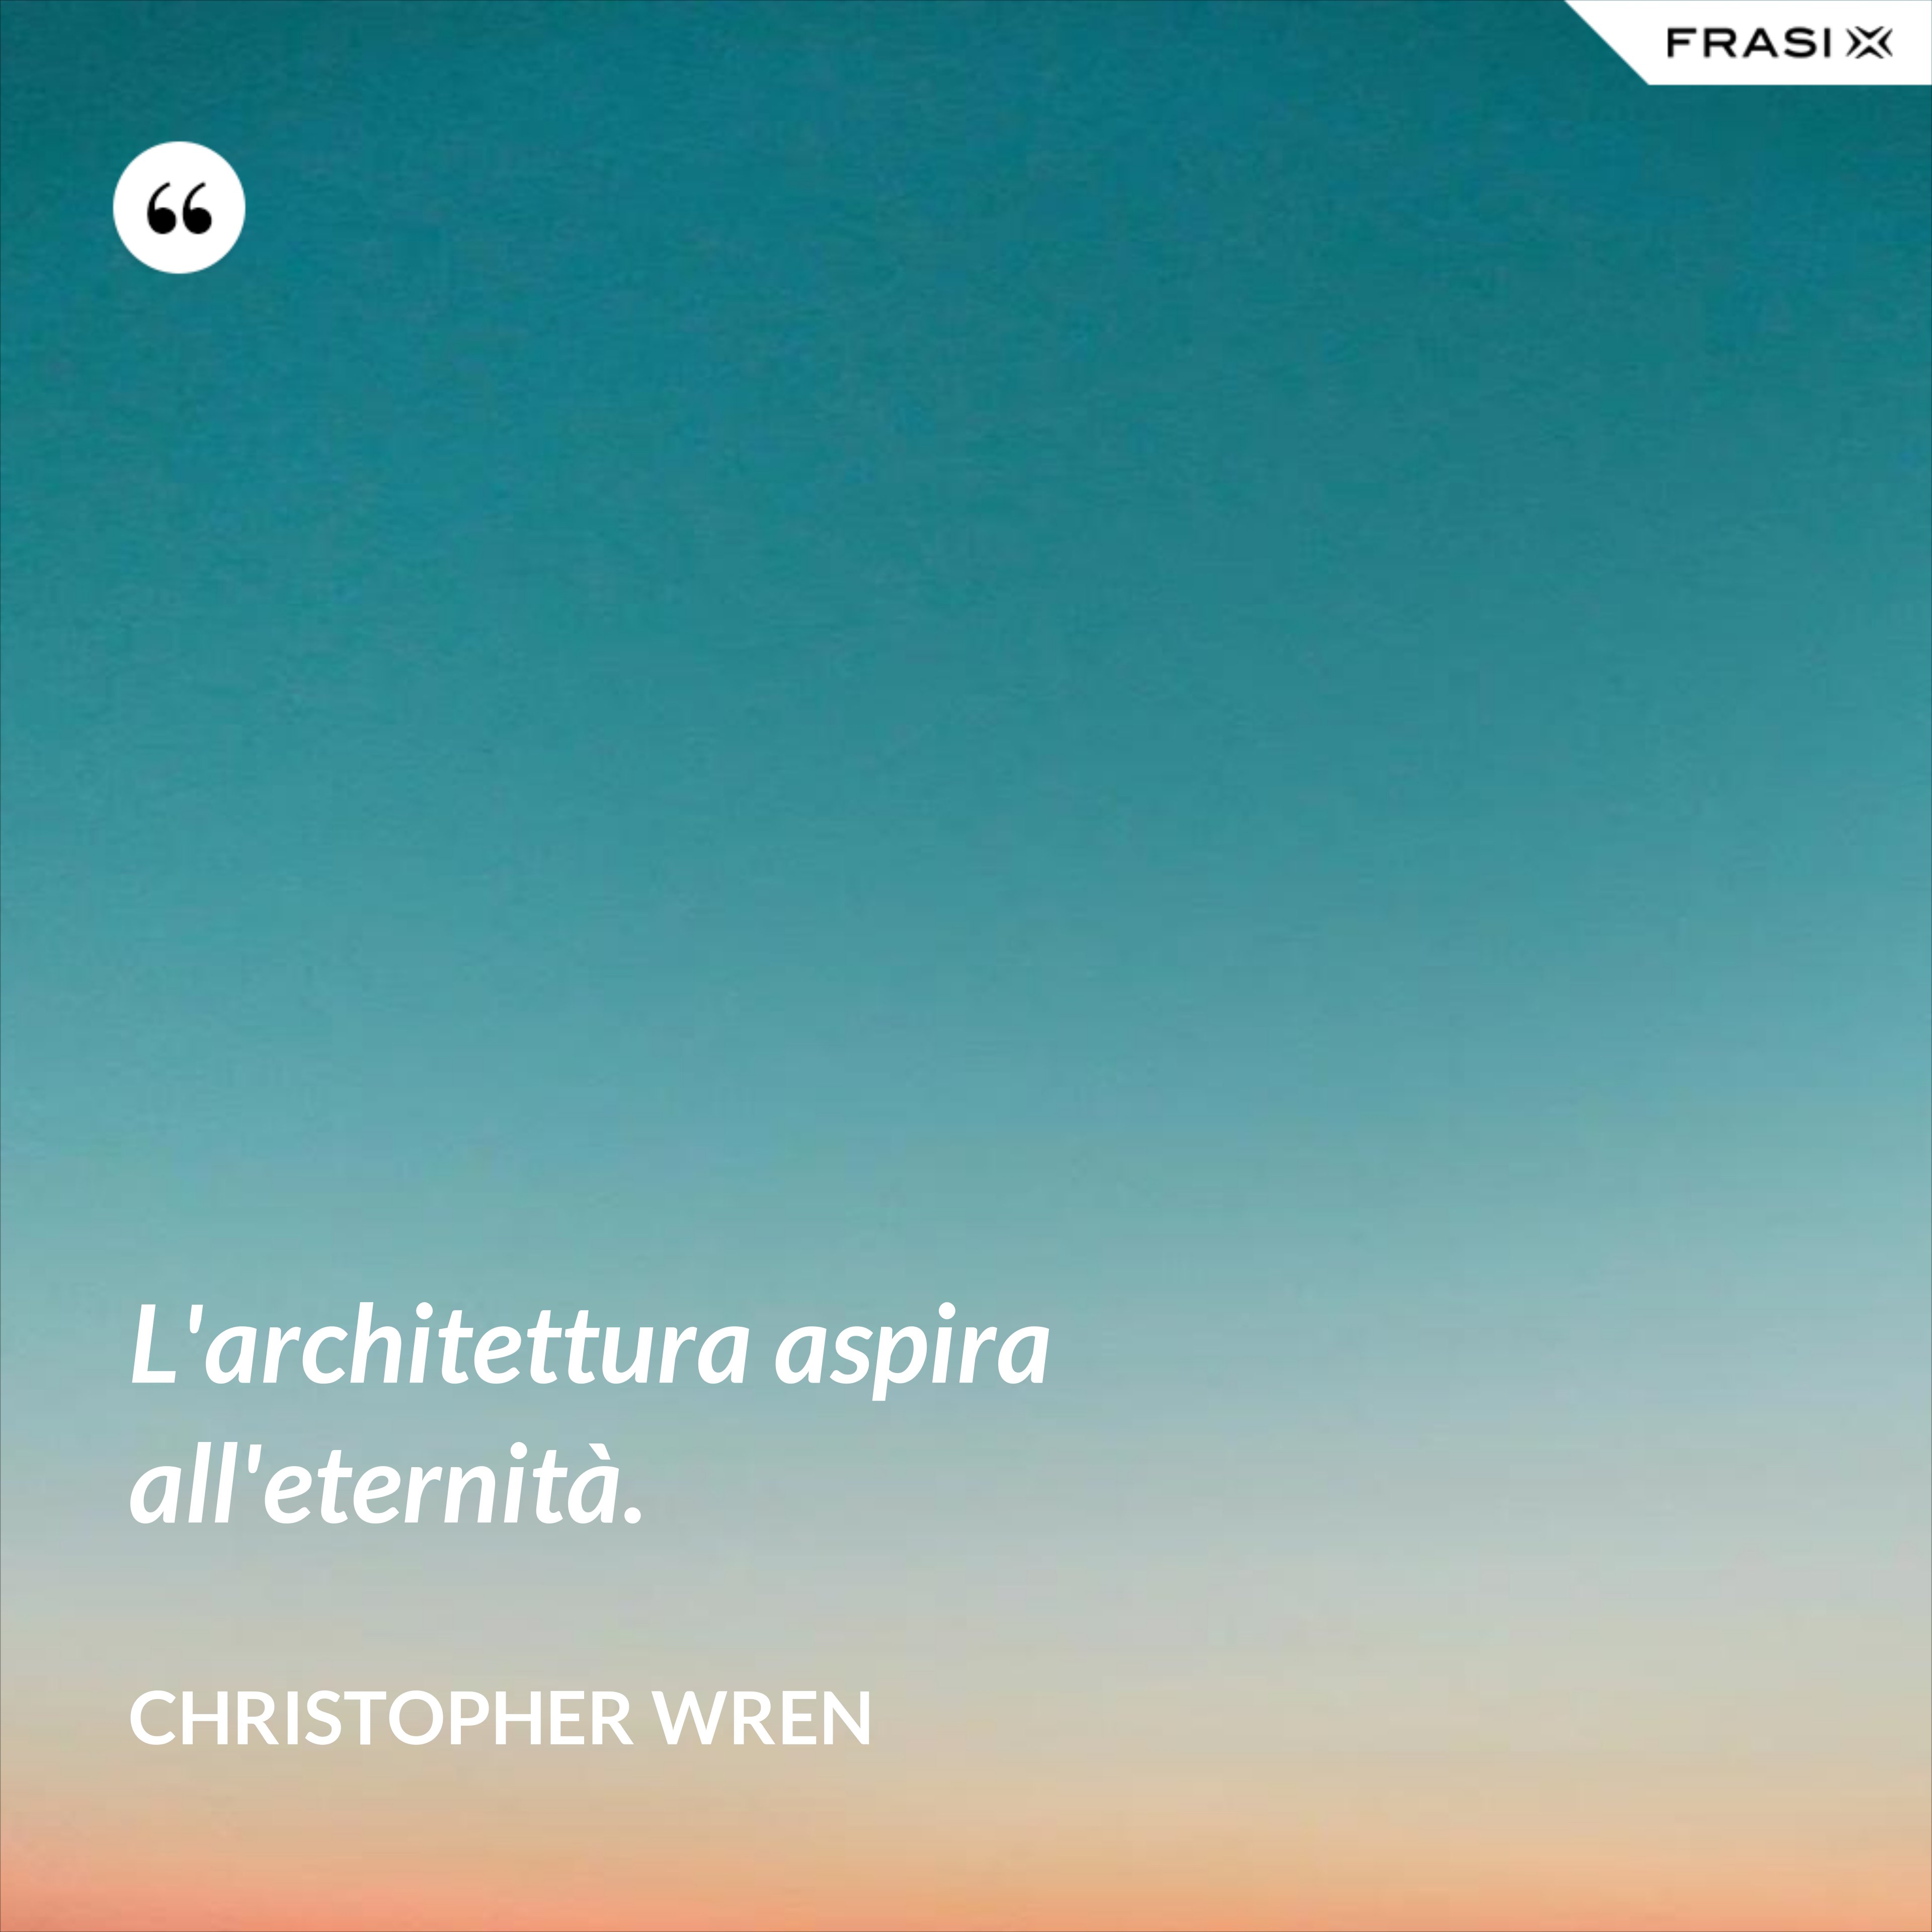 L'architettura aspira all'eternità. - Christopher Wren